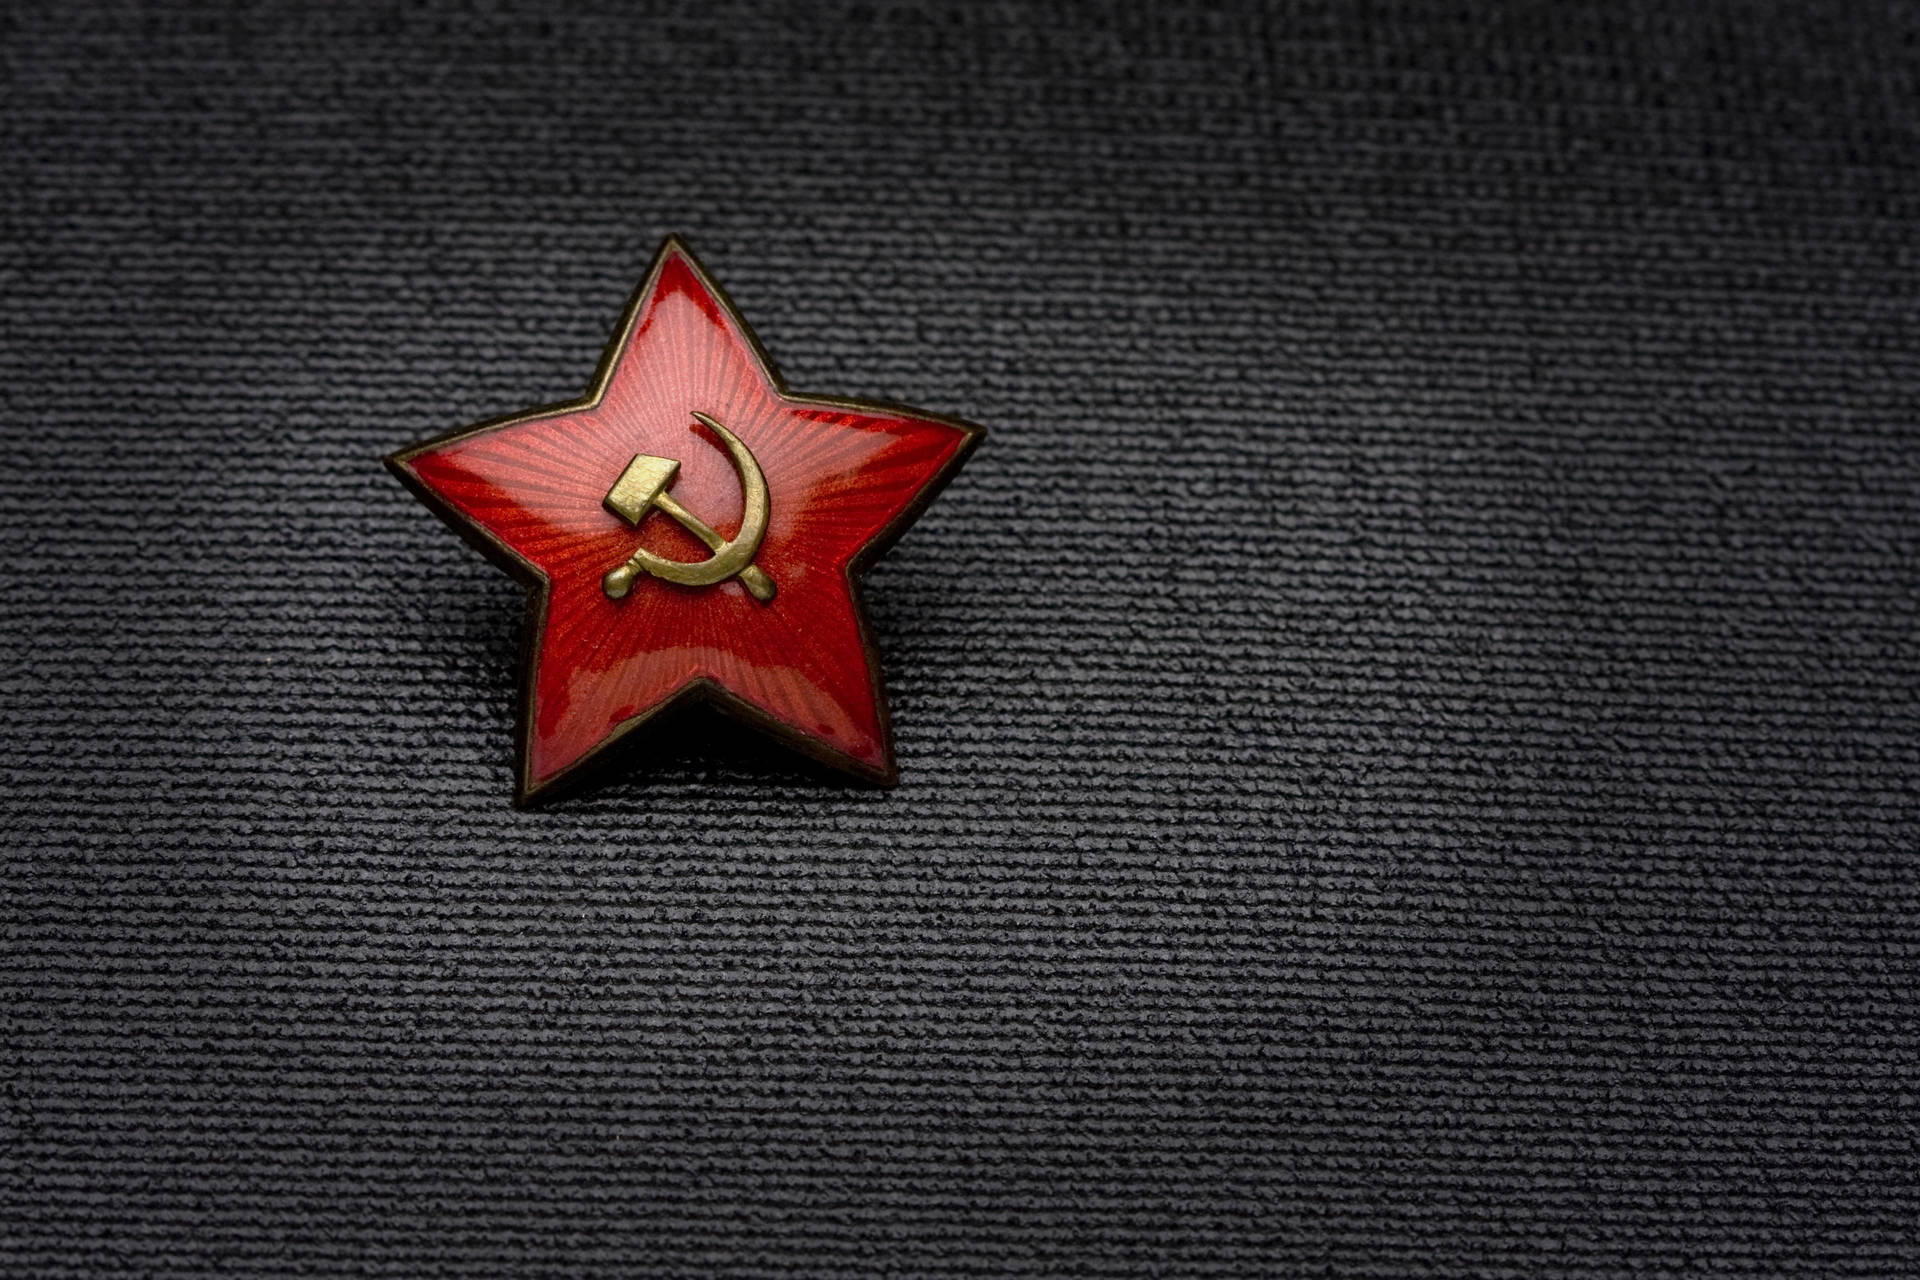 Logotipode La Bandera De La Unión Soviética Fondo de pantalla